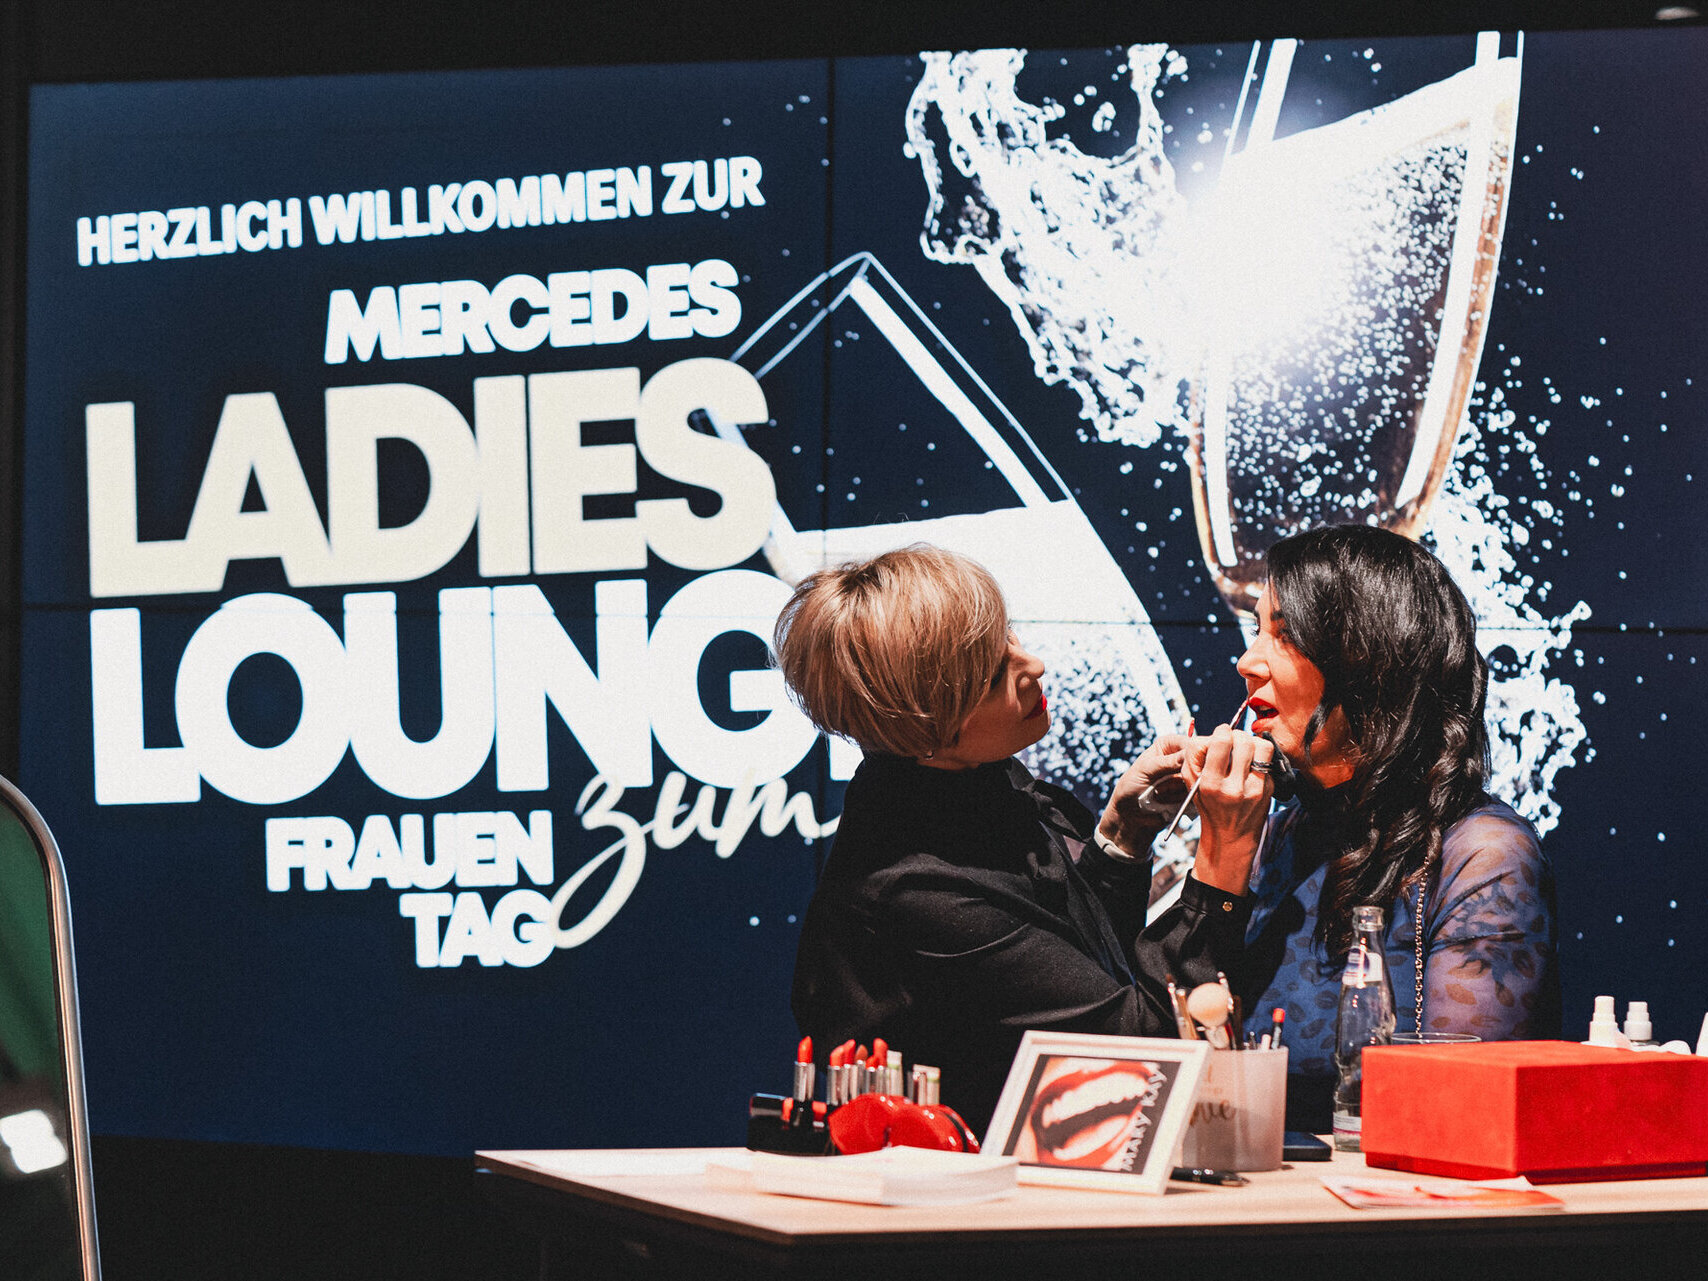 Mercedes-Benz Ladies Lounge zum Frauentag bei STERNAUTO in Magdeburg